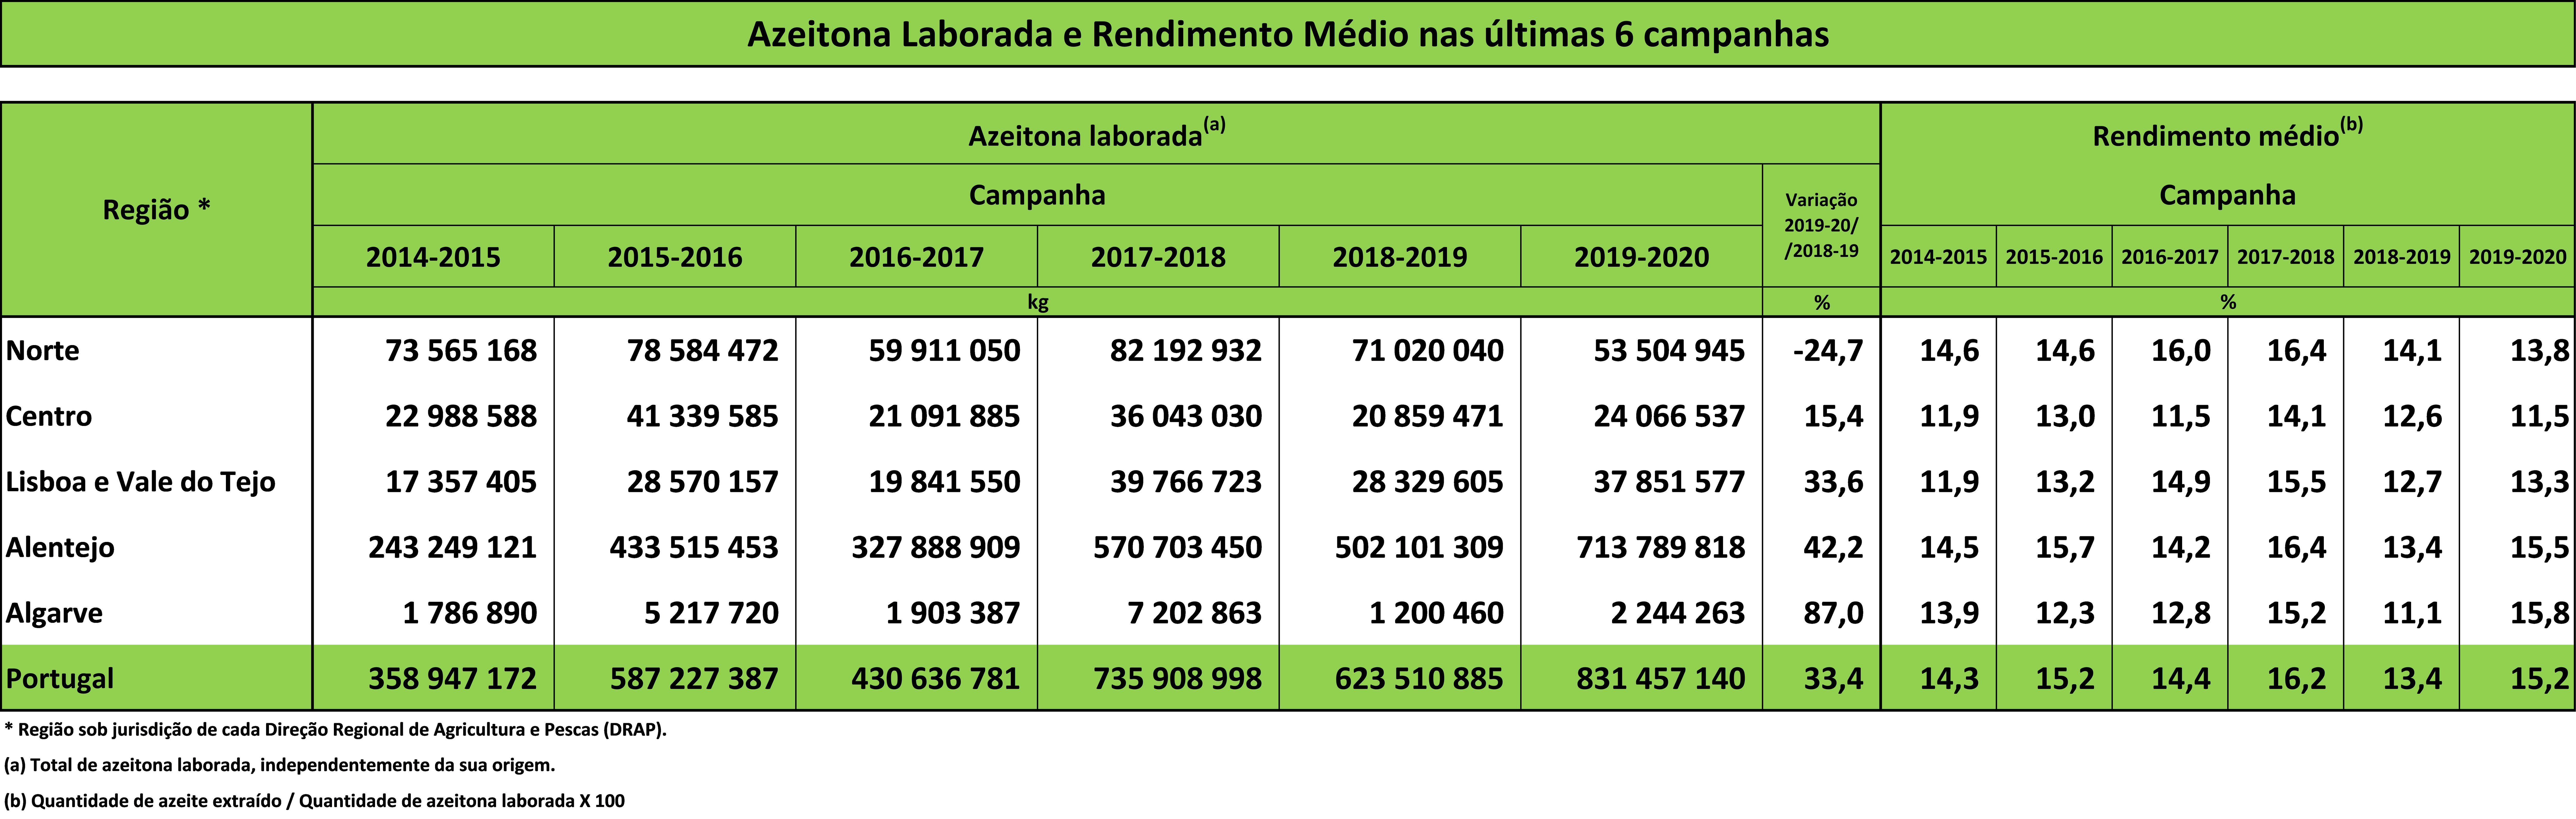 tabela Azeitona Laborada e Rendimento Médio nas últimas 6 campanhas